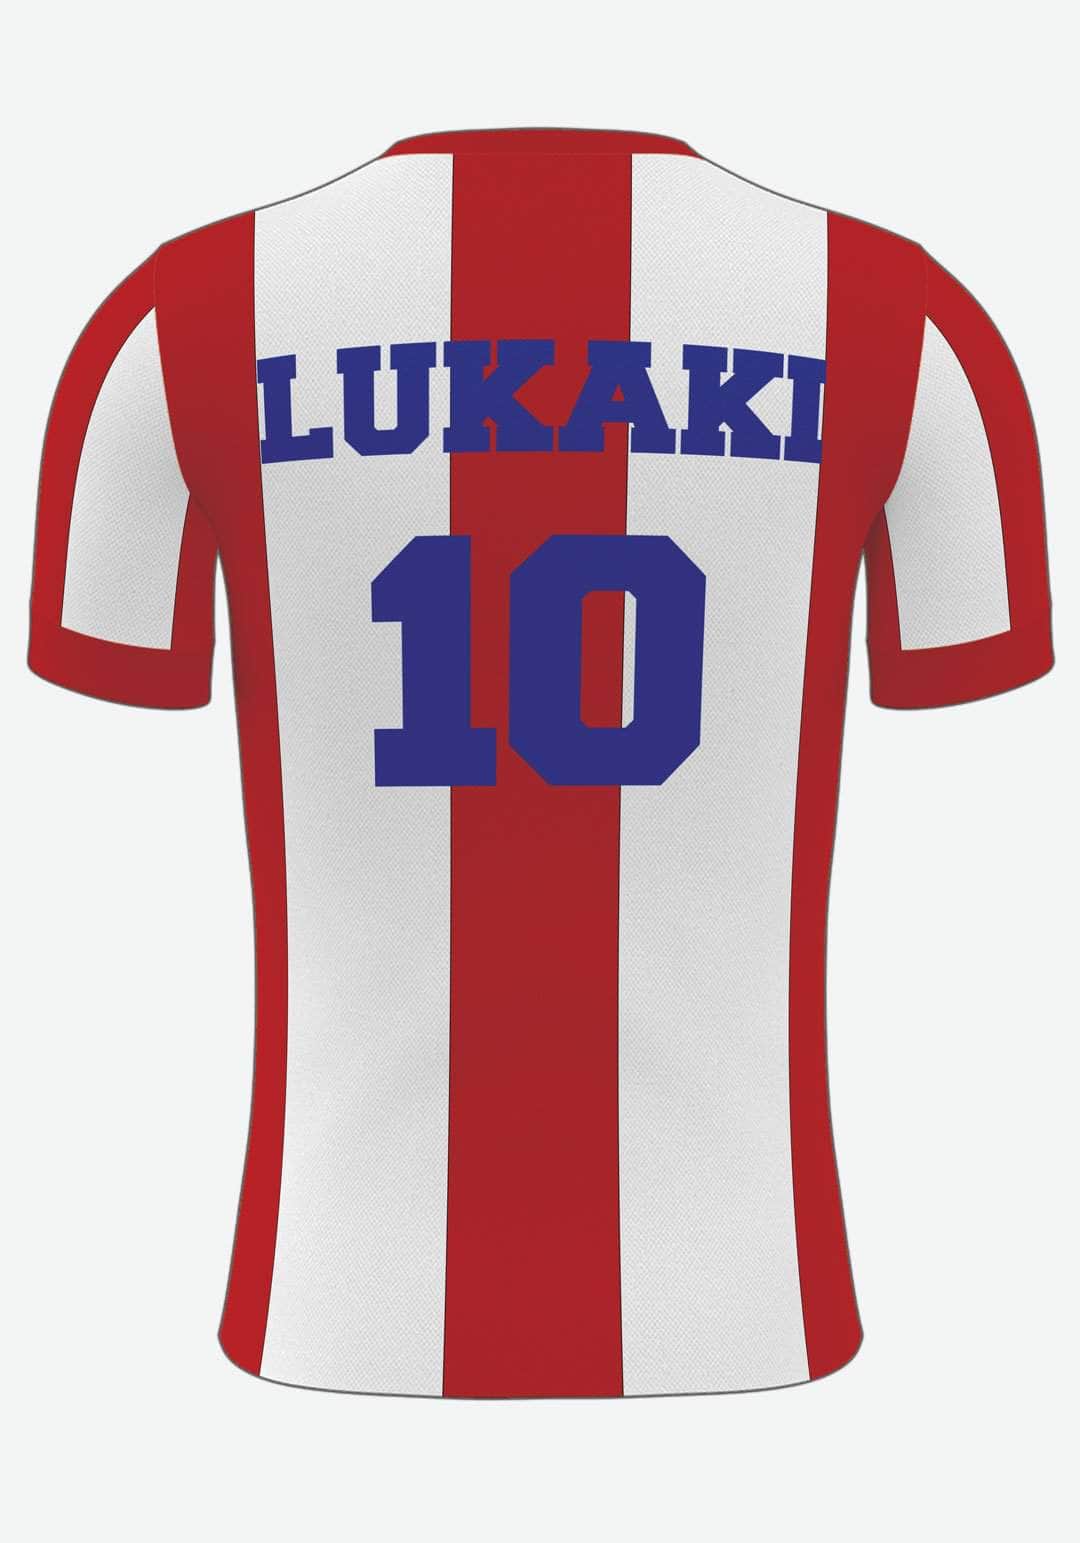 Se Atletico Fodbold plakat - med eget navn og nummer, 21x30 hos Lukaki.dk